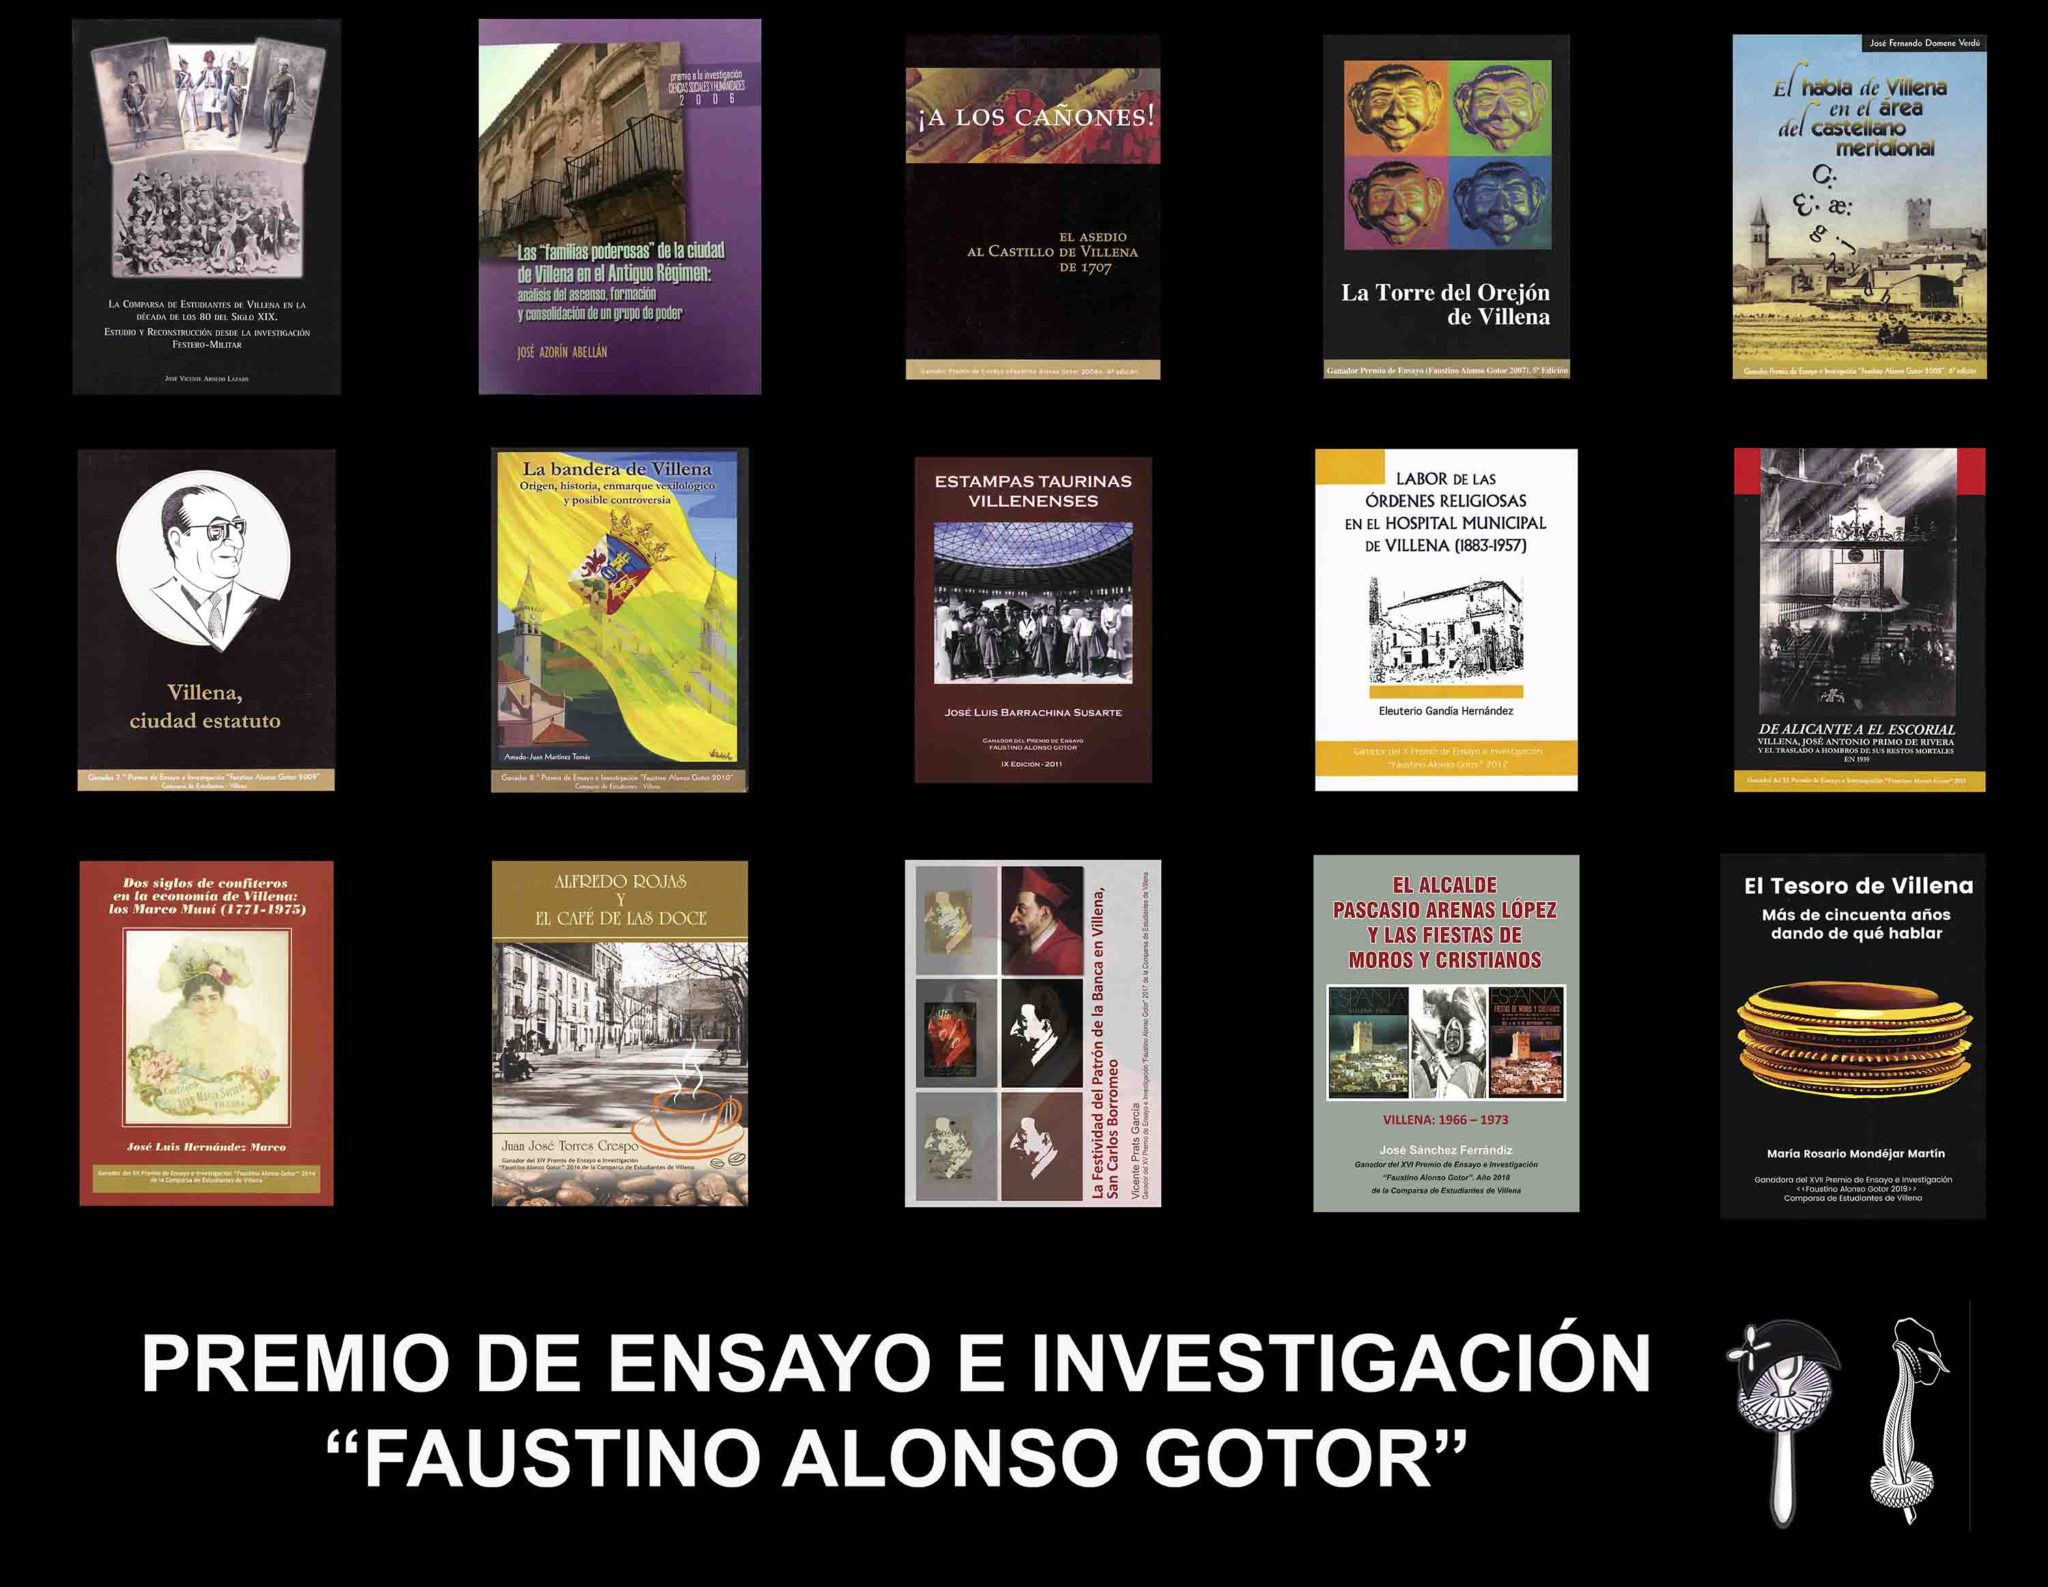 La comparsa de Estudiantes anula la convocatoria del Premio Faustino Alonso Gotor